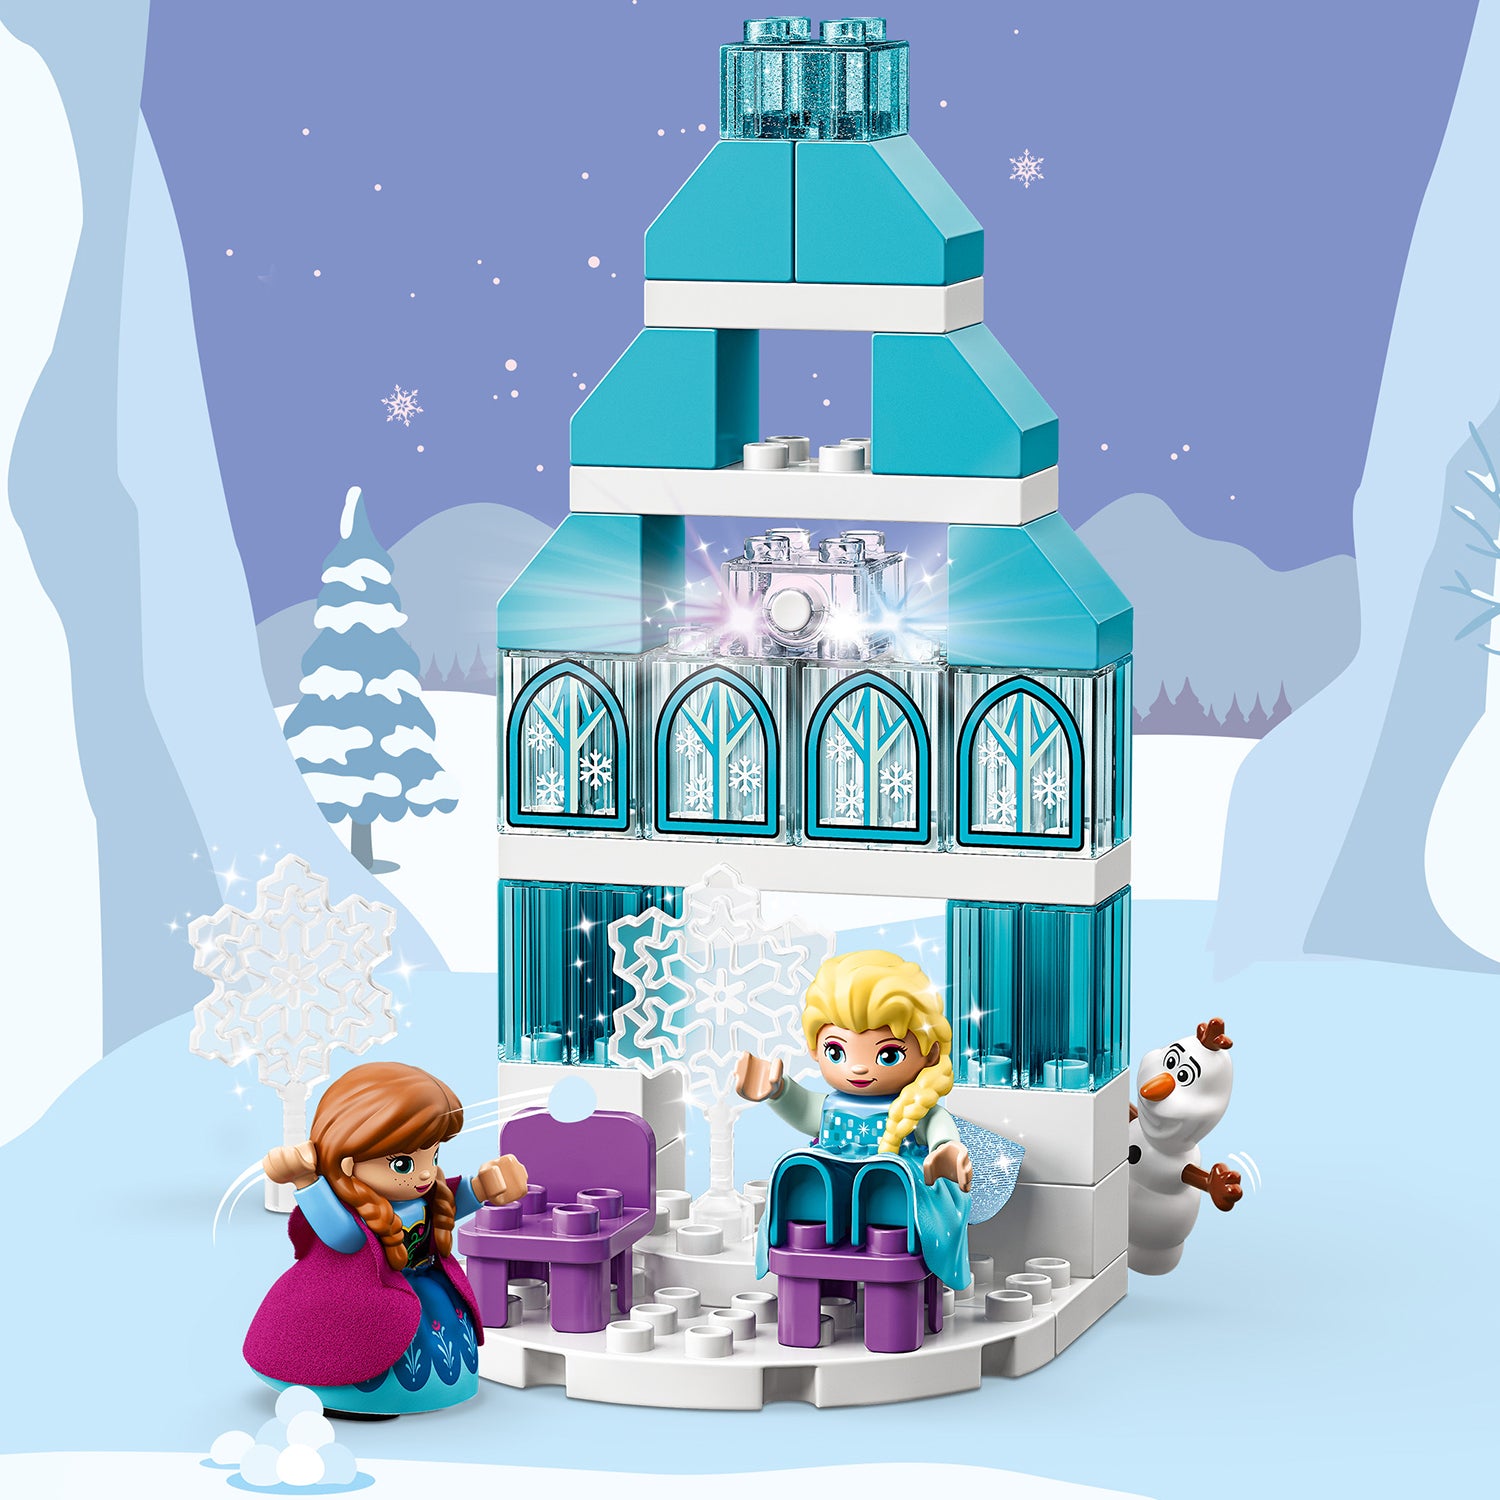 LEGO® DUPLO Disney Frozen Ice Castle Set 10899 Default Title